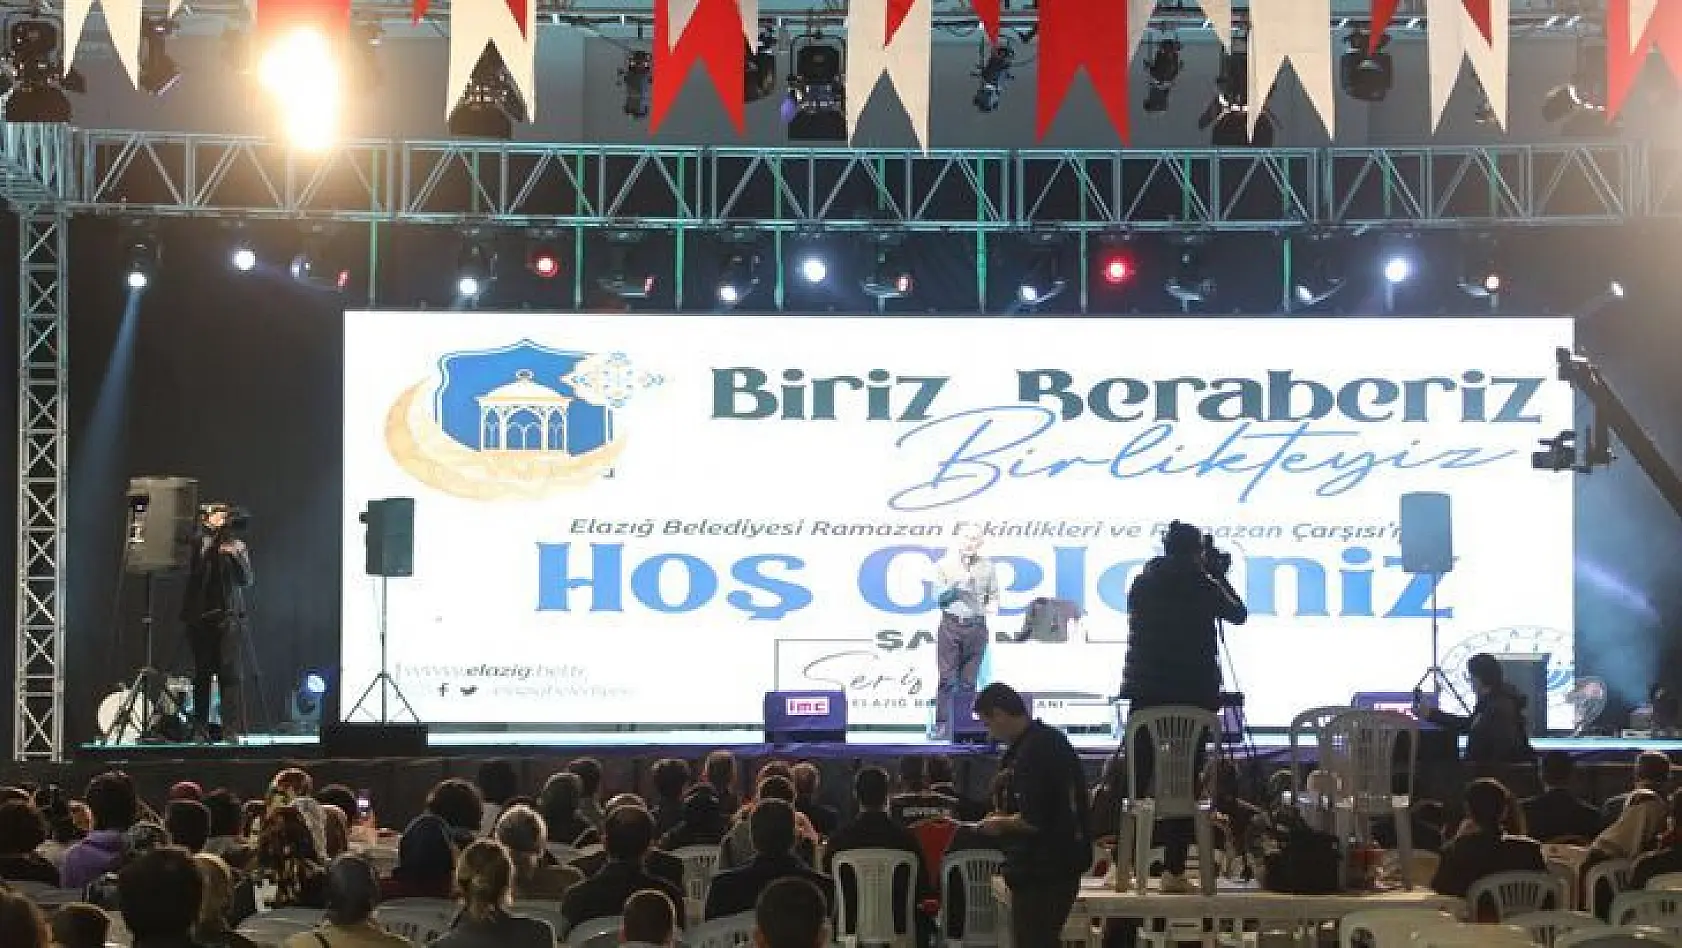 Elazığ Belediyesi'nin Ramazana Özel Düzenlediği Birbirinden Güzel Etkinlikler Tüm Hızıyla Devam Ediyor.